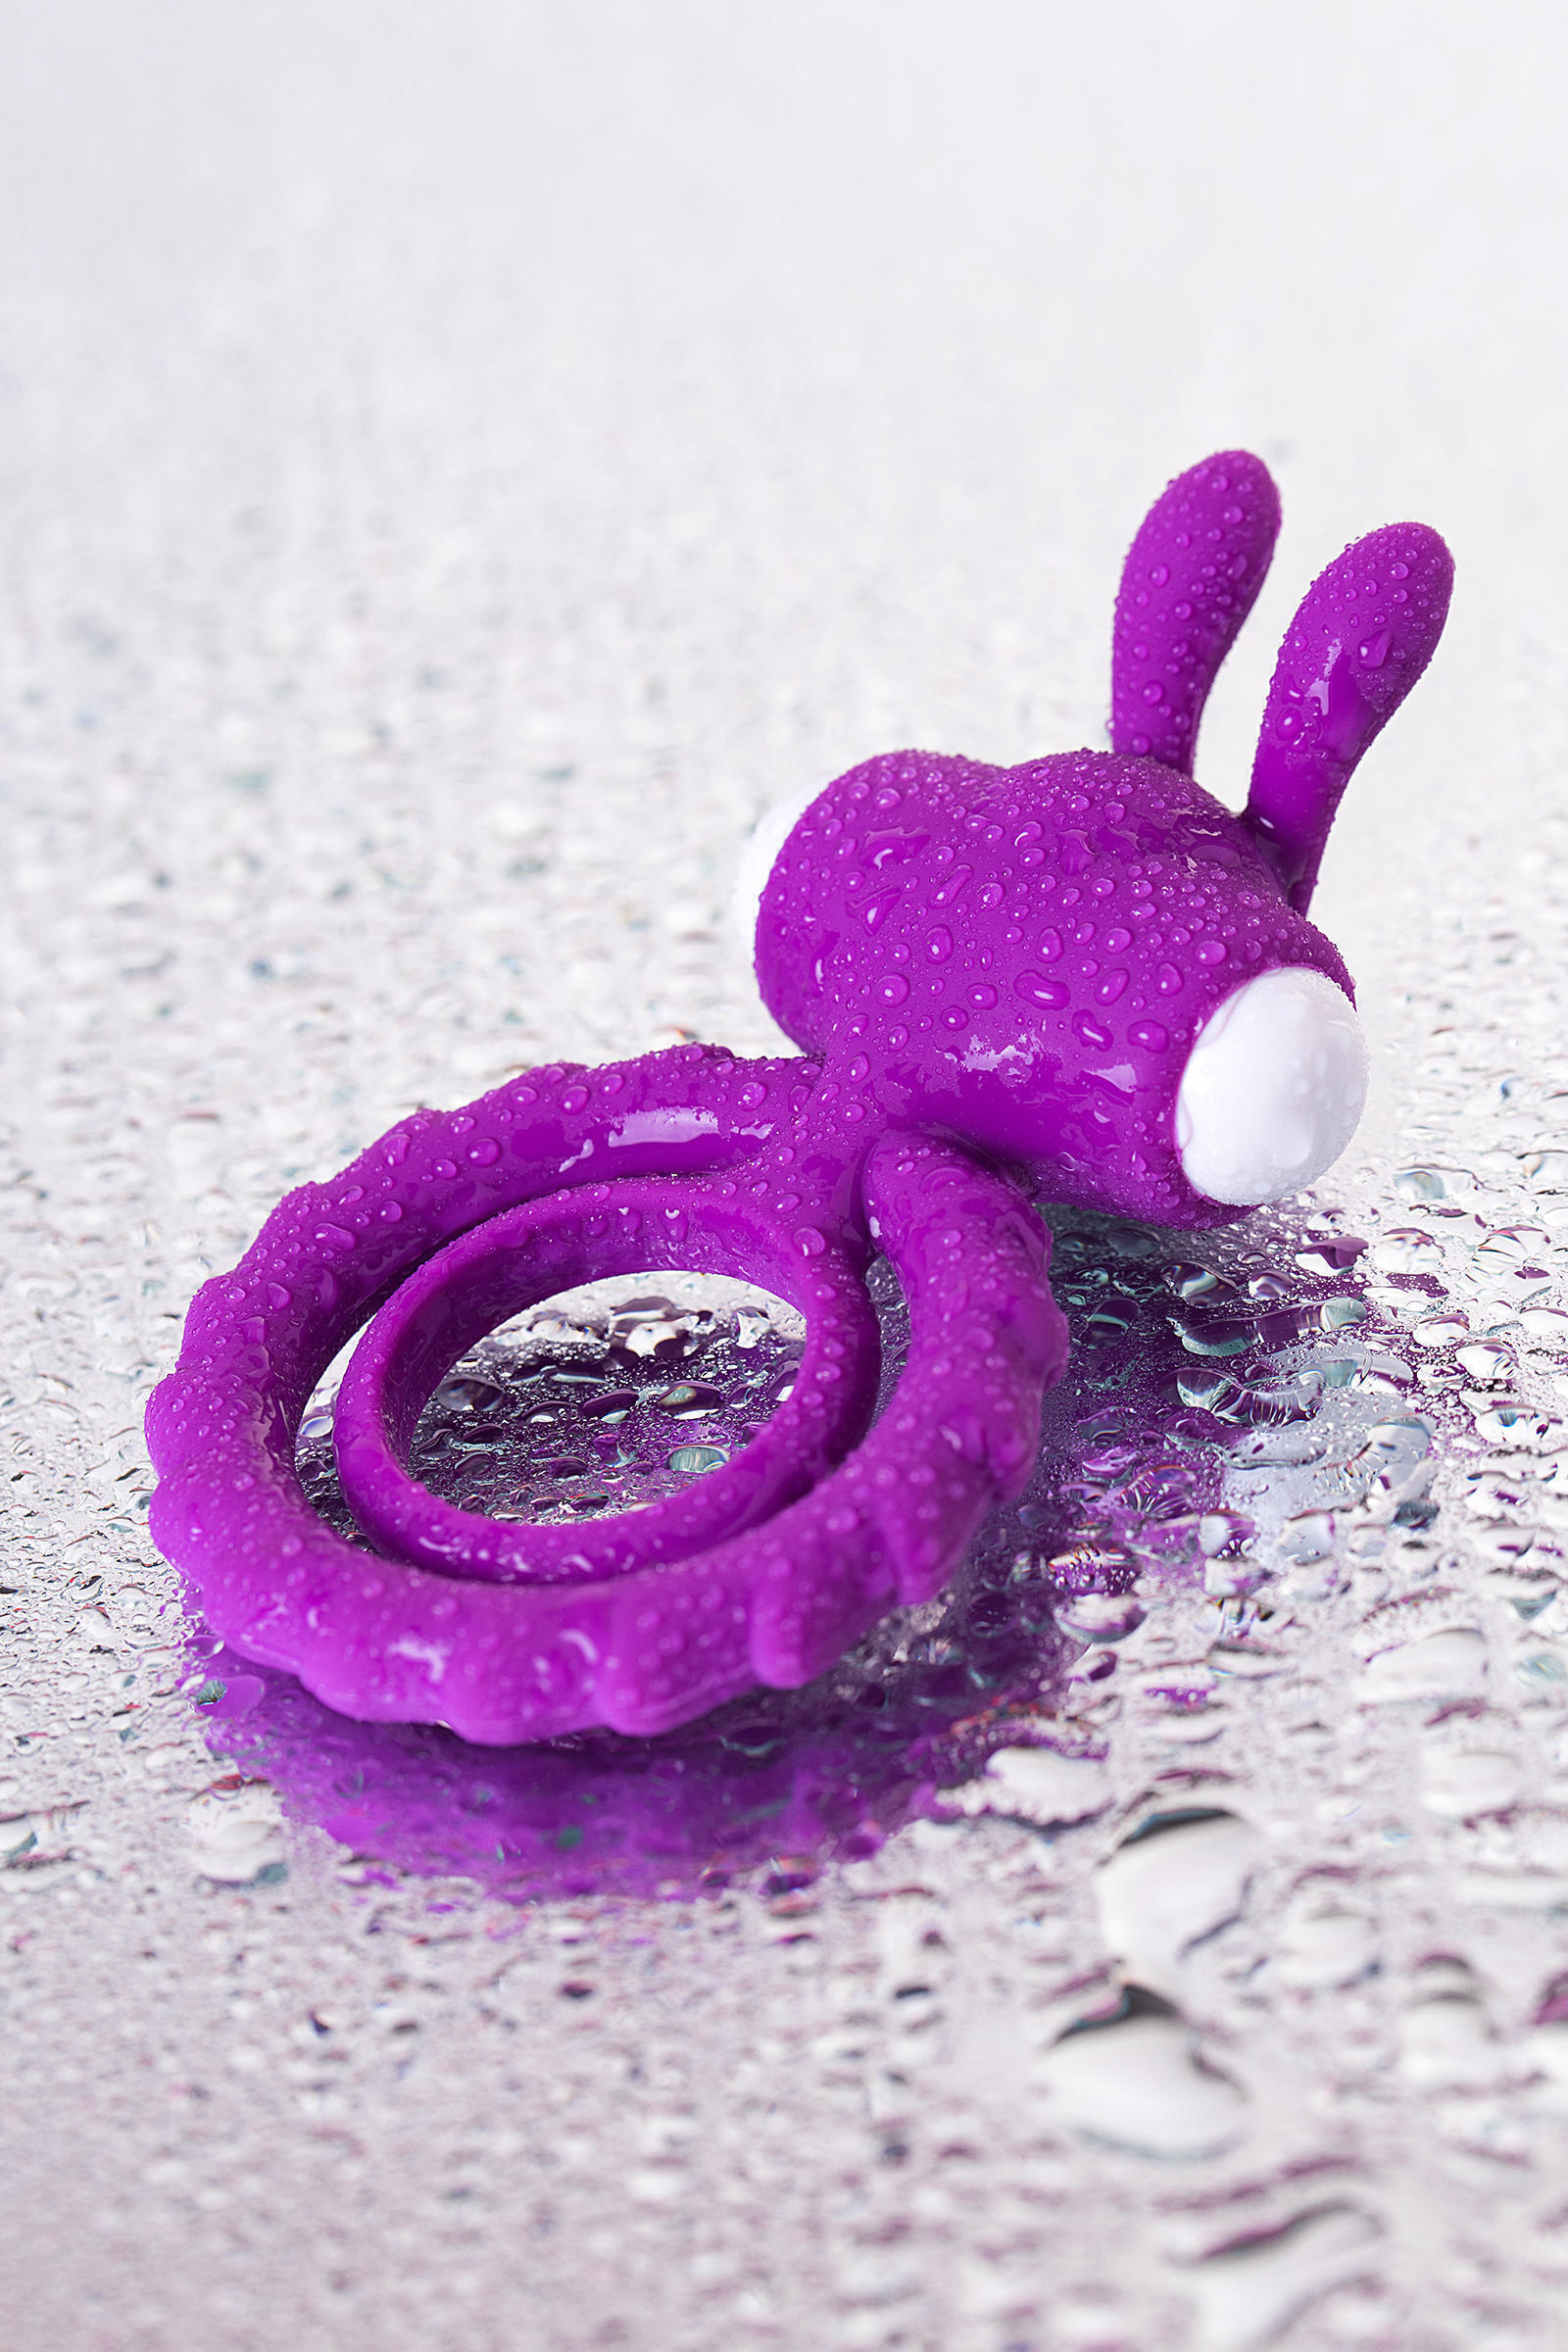 Виброкольцо Jos Good Bunny, фиолетовый